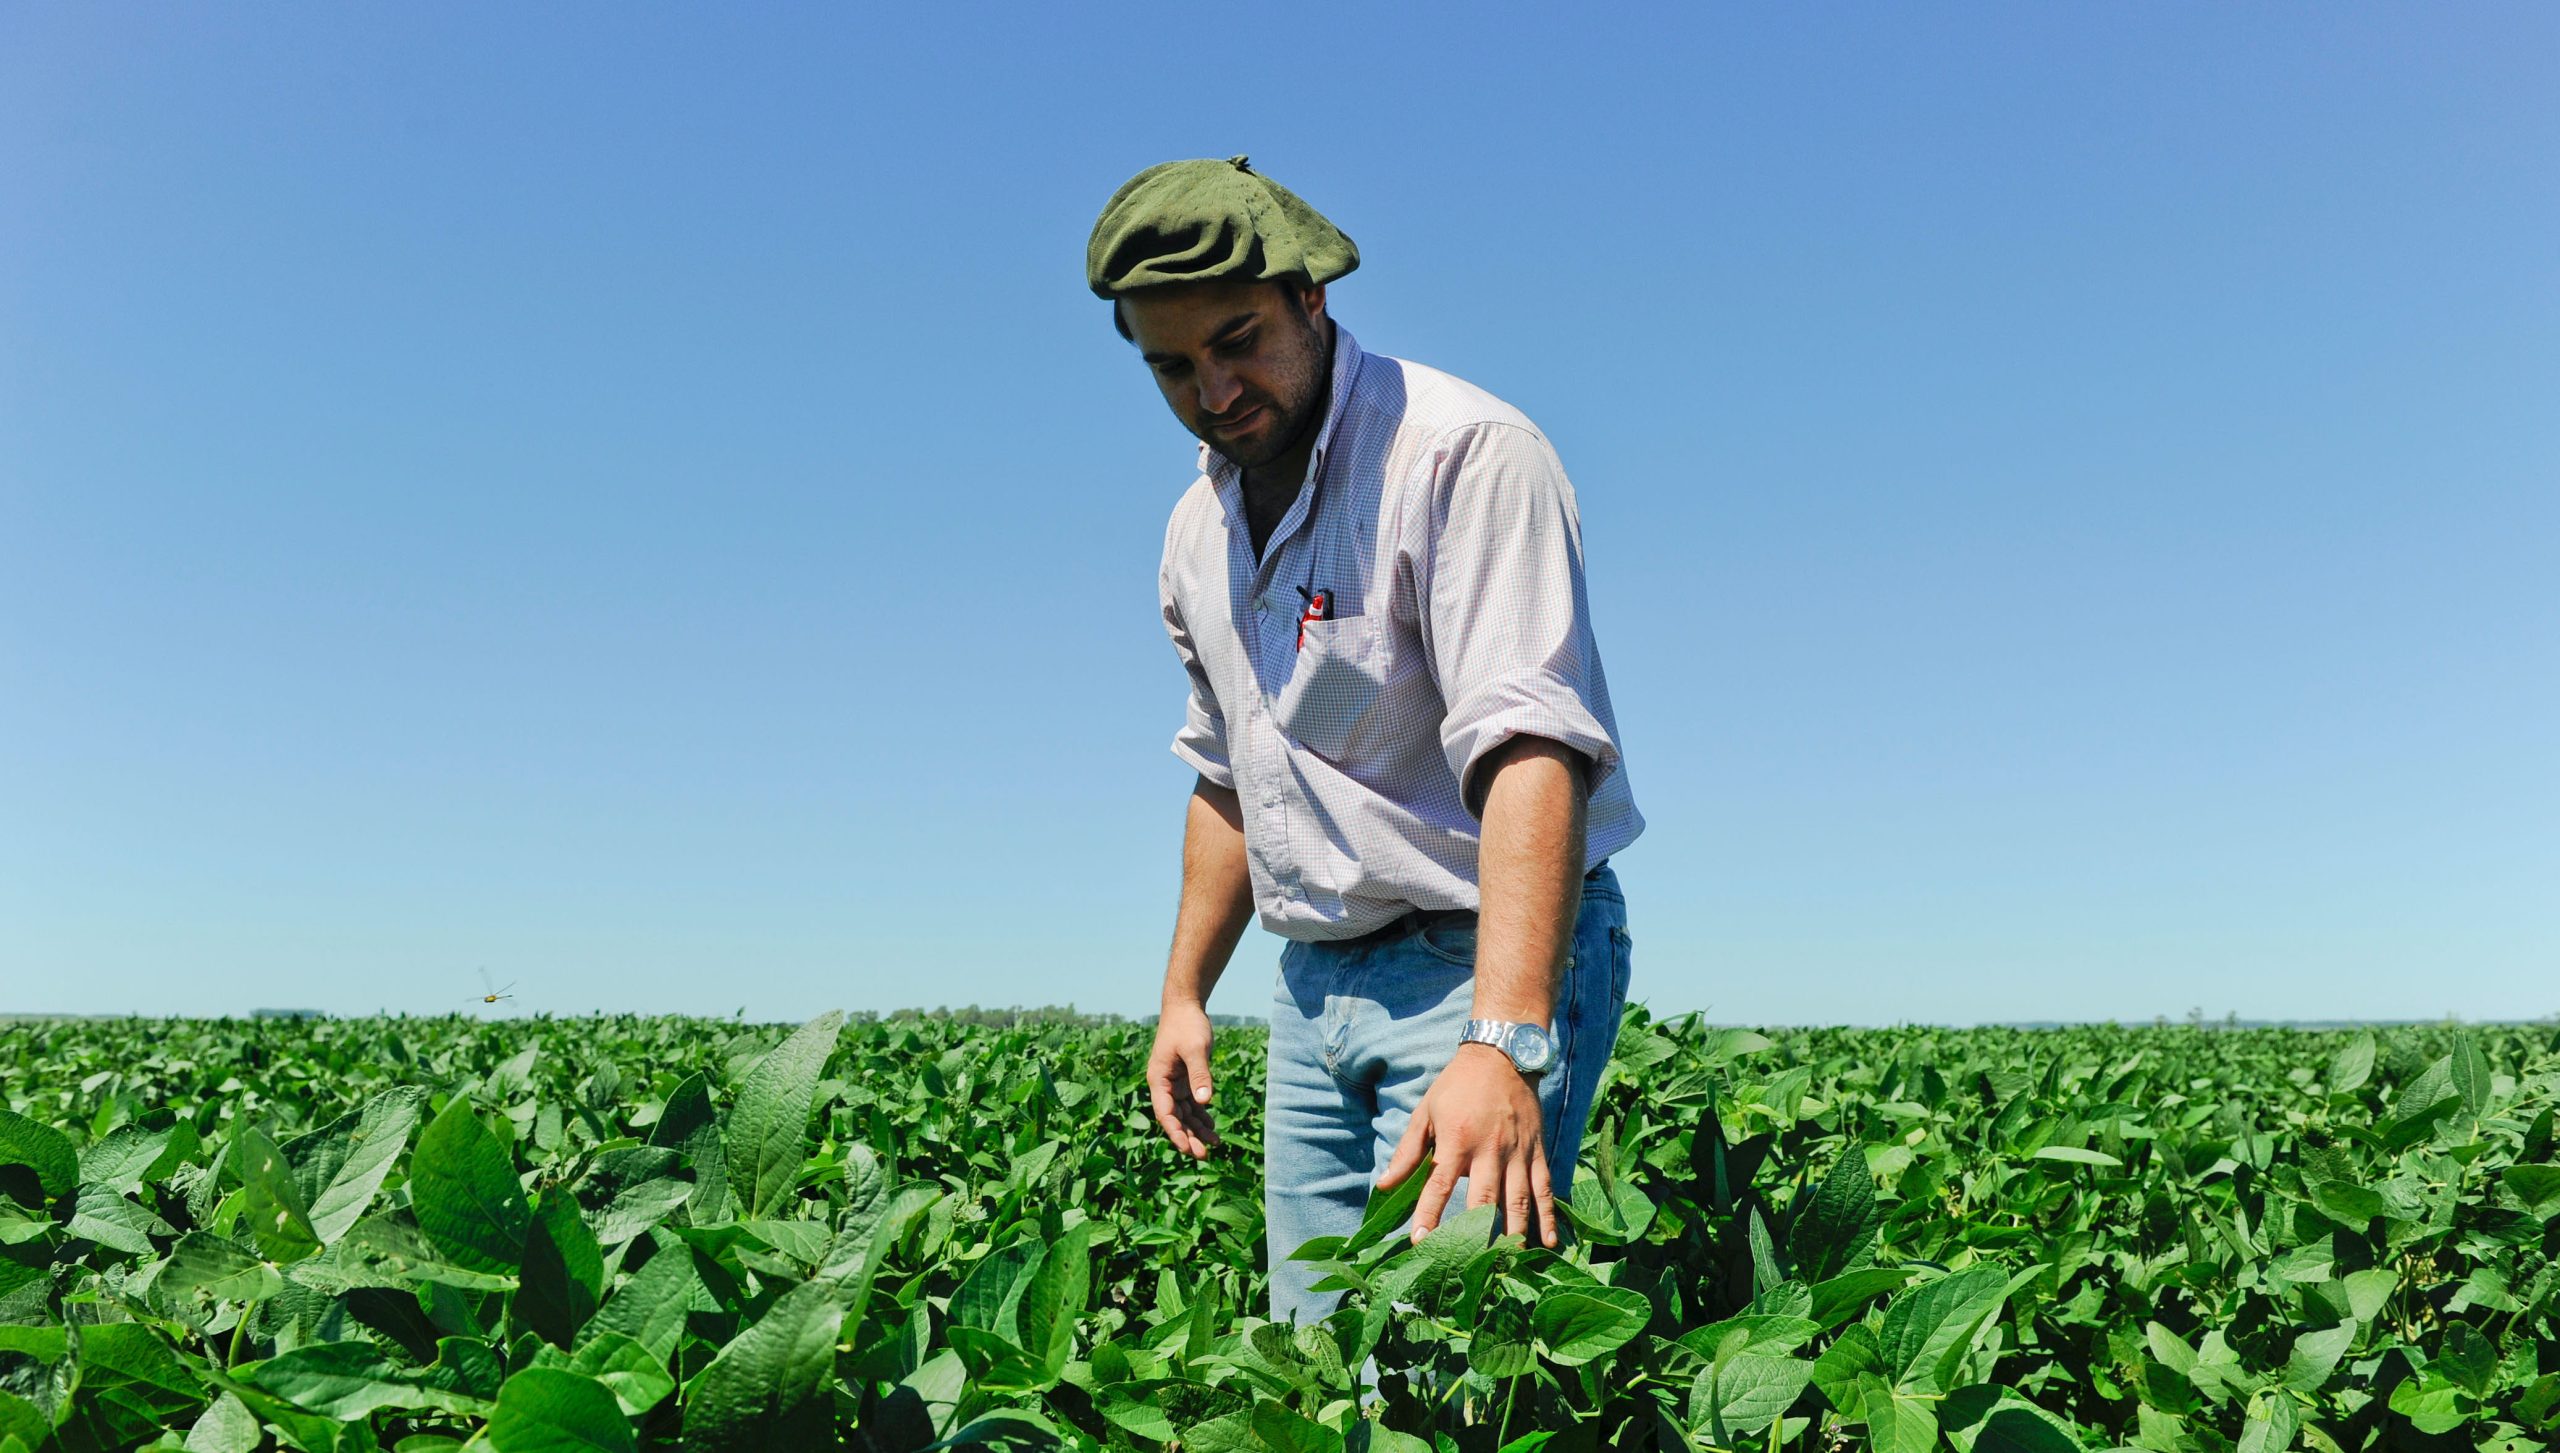 <p>Un agricultor inspecciona cultivos de soja transgénica en Salto, Uruguay. La siembra de soja no transgénica es actualmente marginal en los principales países productores de América del Sur (Imagen: Joerg Boethling / Alamy)</p>